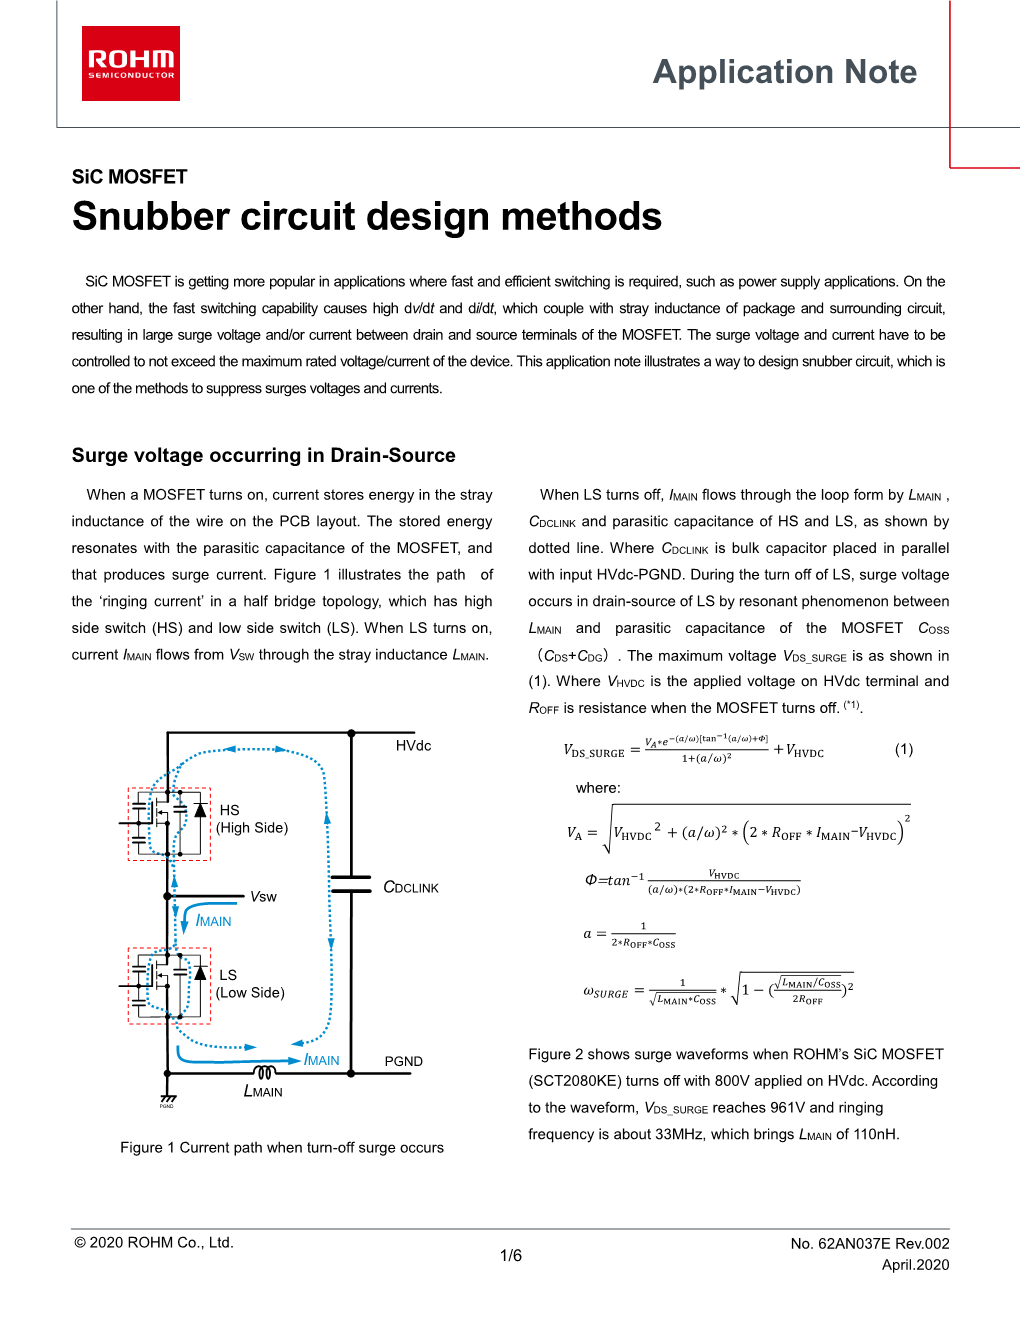 Snubber Circuit Design Methods